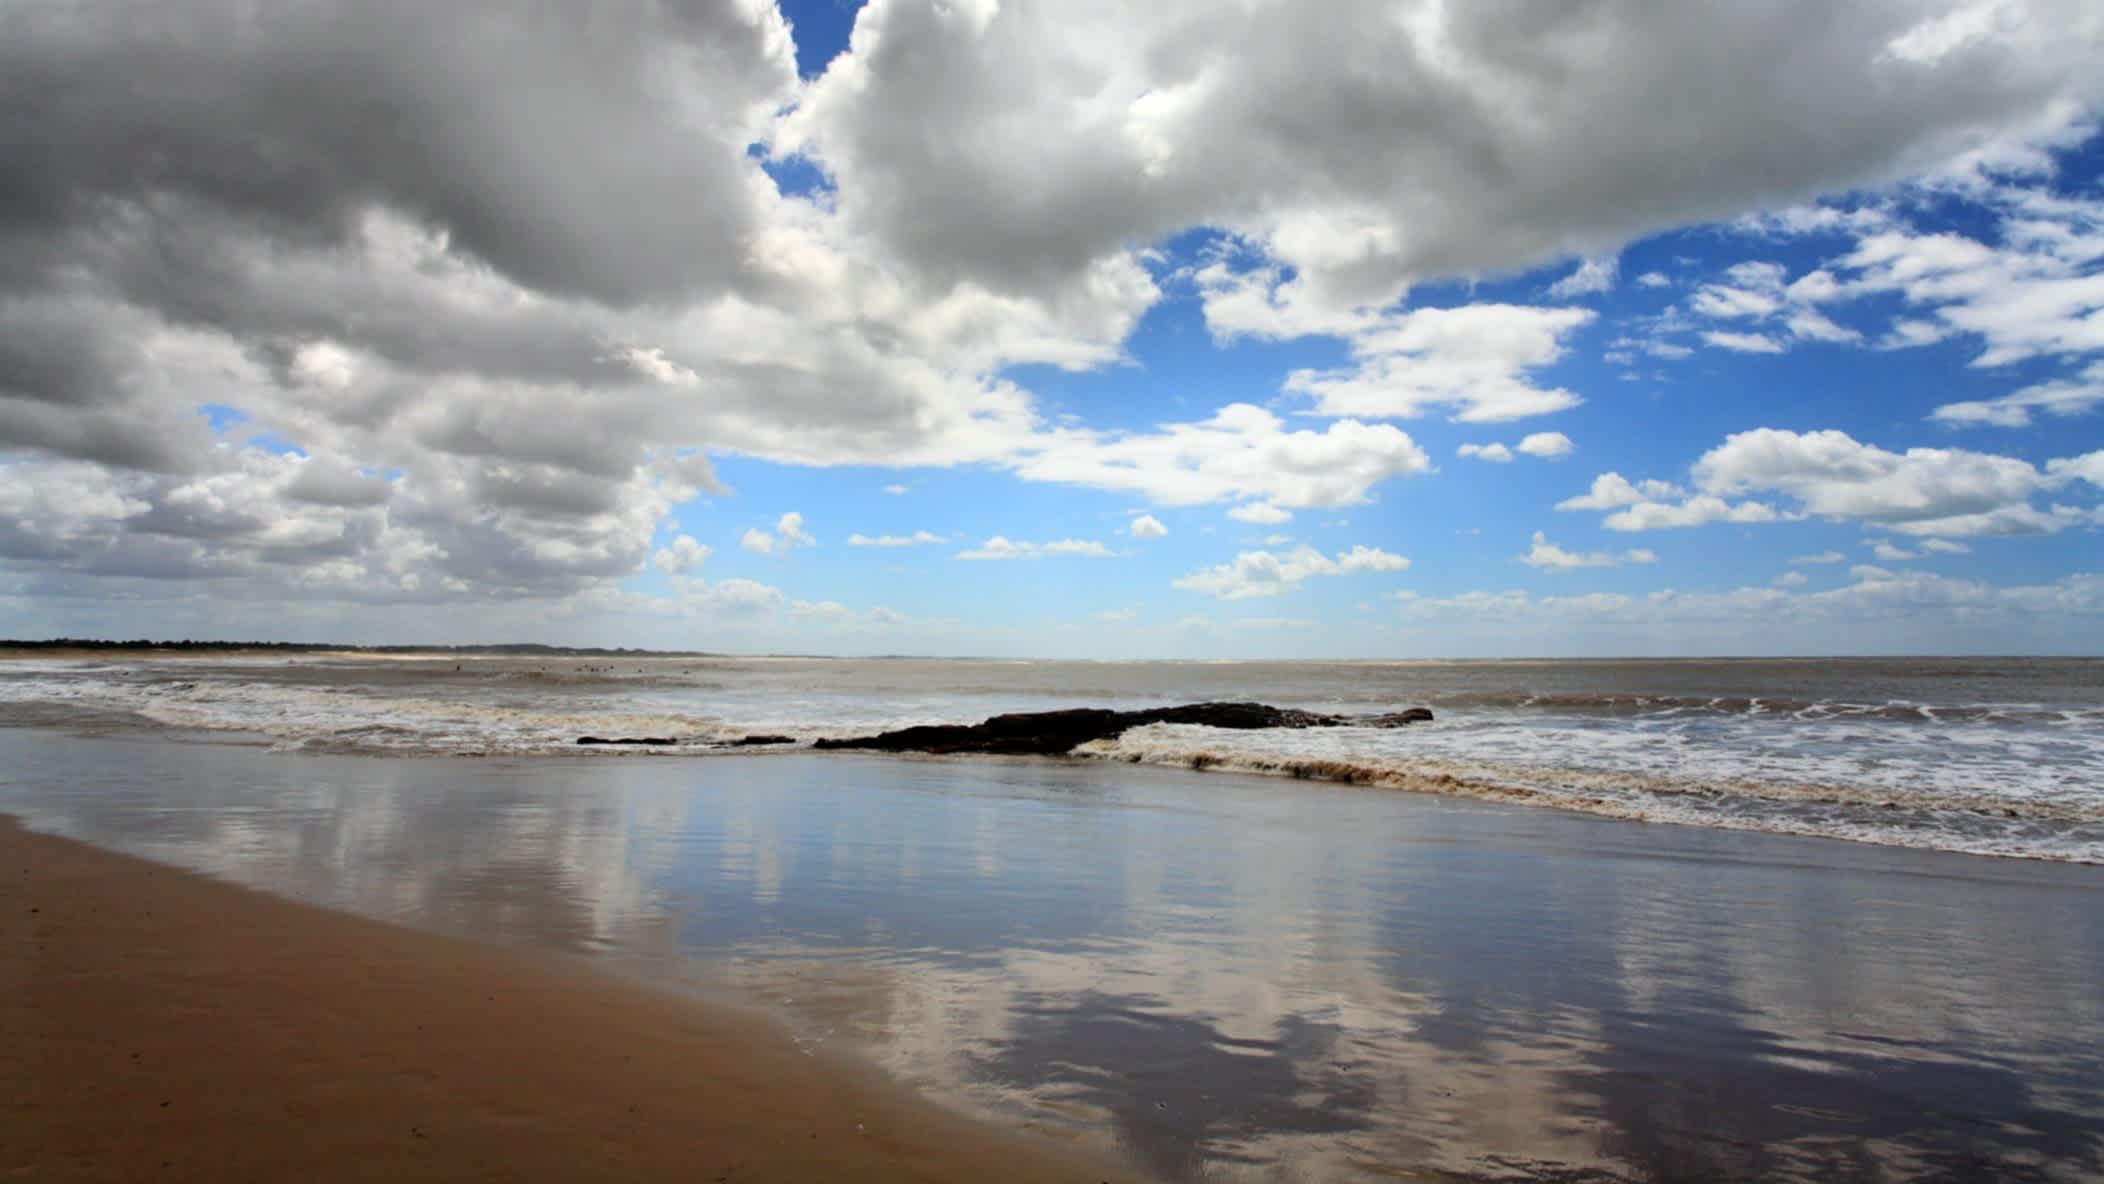 Vue de la mer sur le sable par temps nuageux, sur la plage de Los Titanes, en Uruguay.
